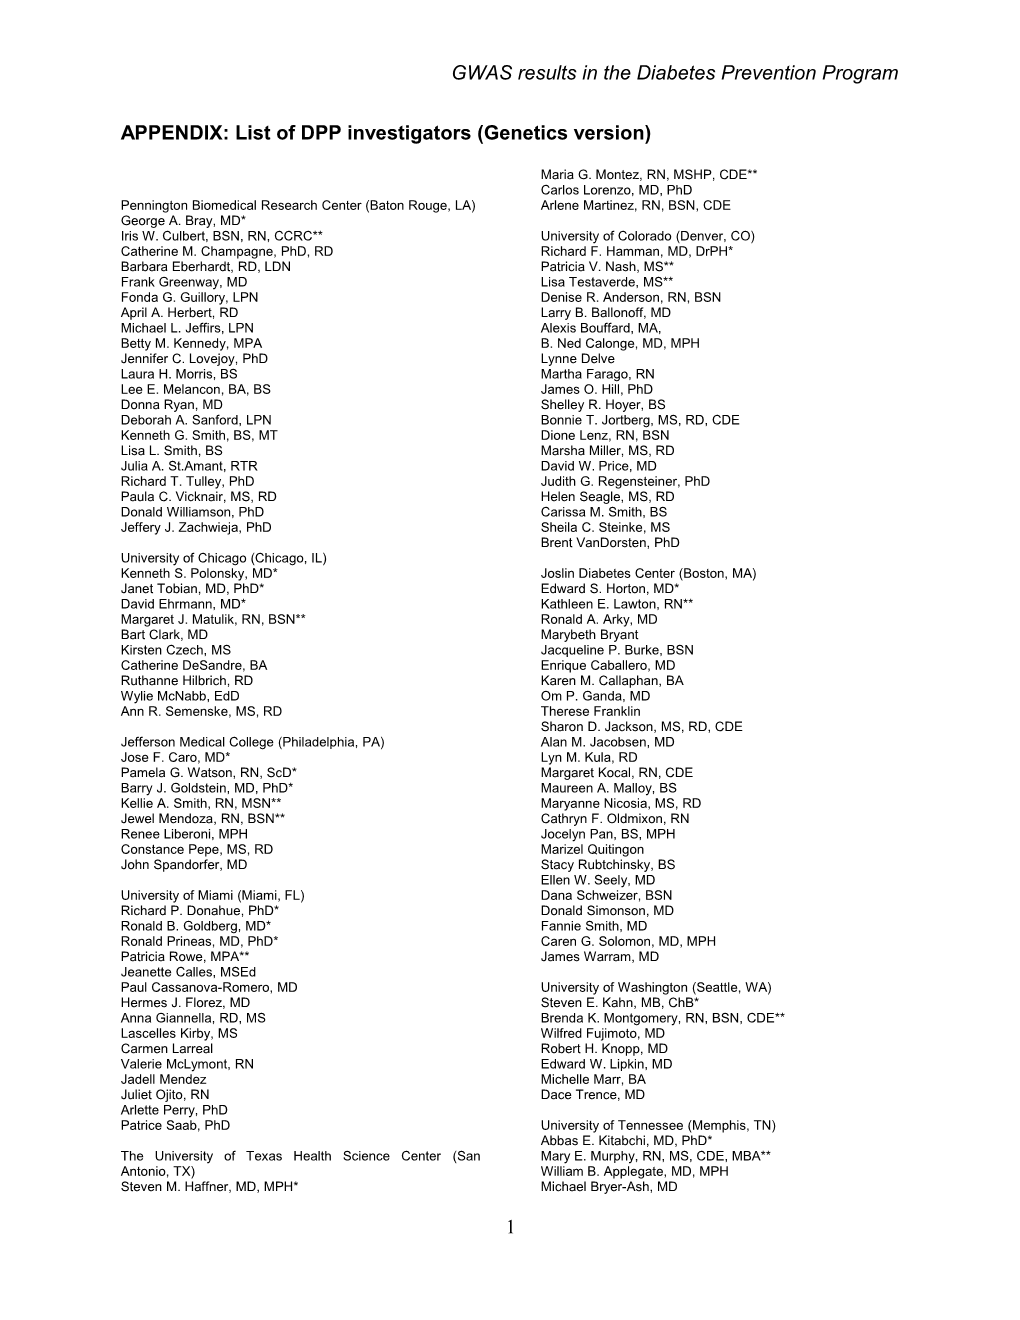 APPENDIX: List of DPP Investigators (Genetics Version)